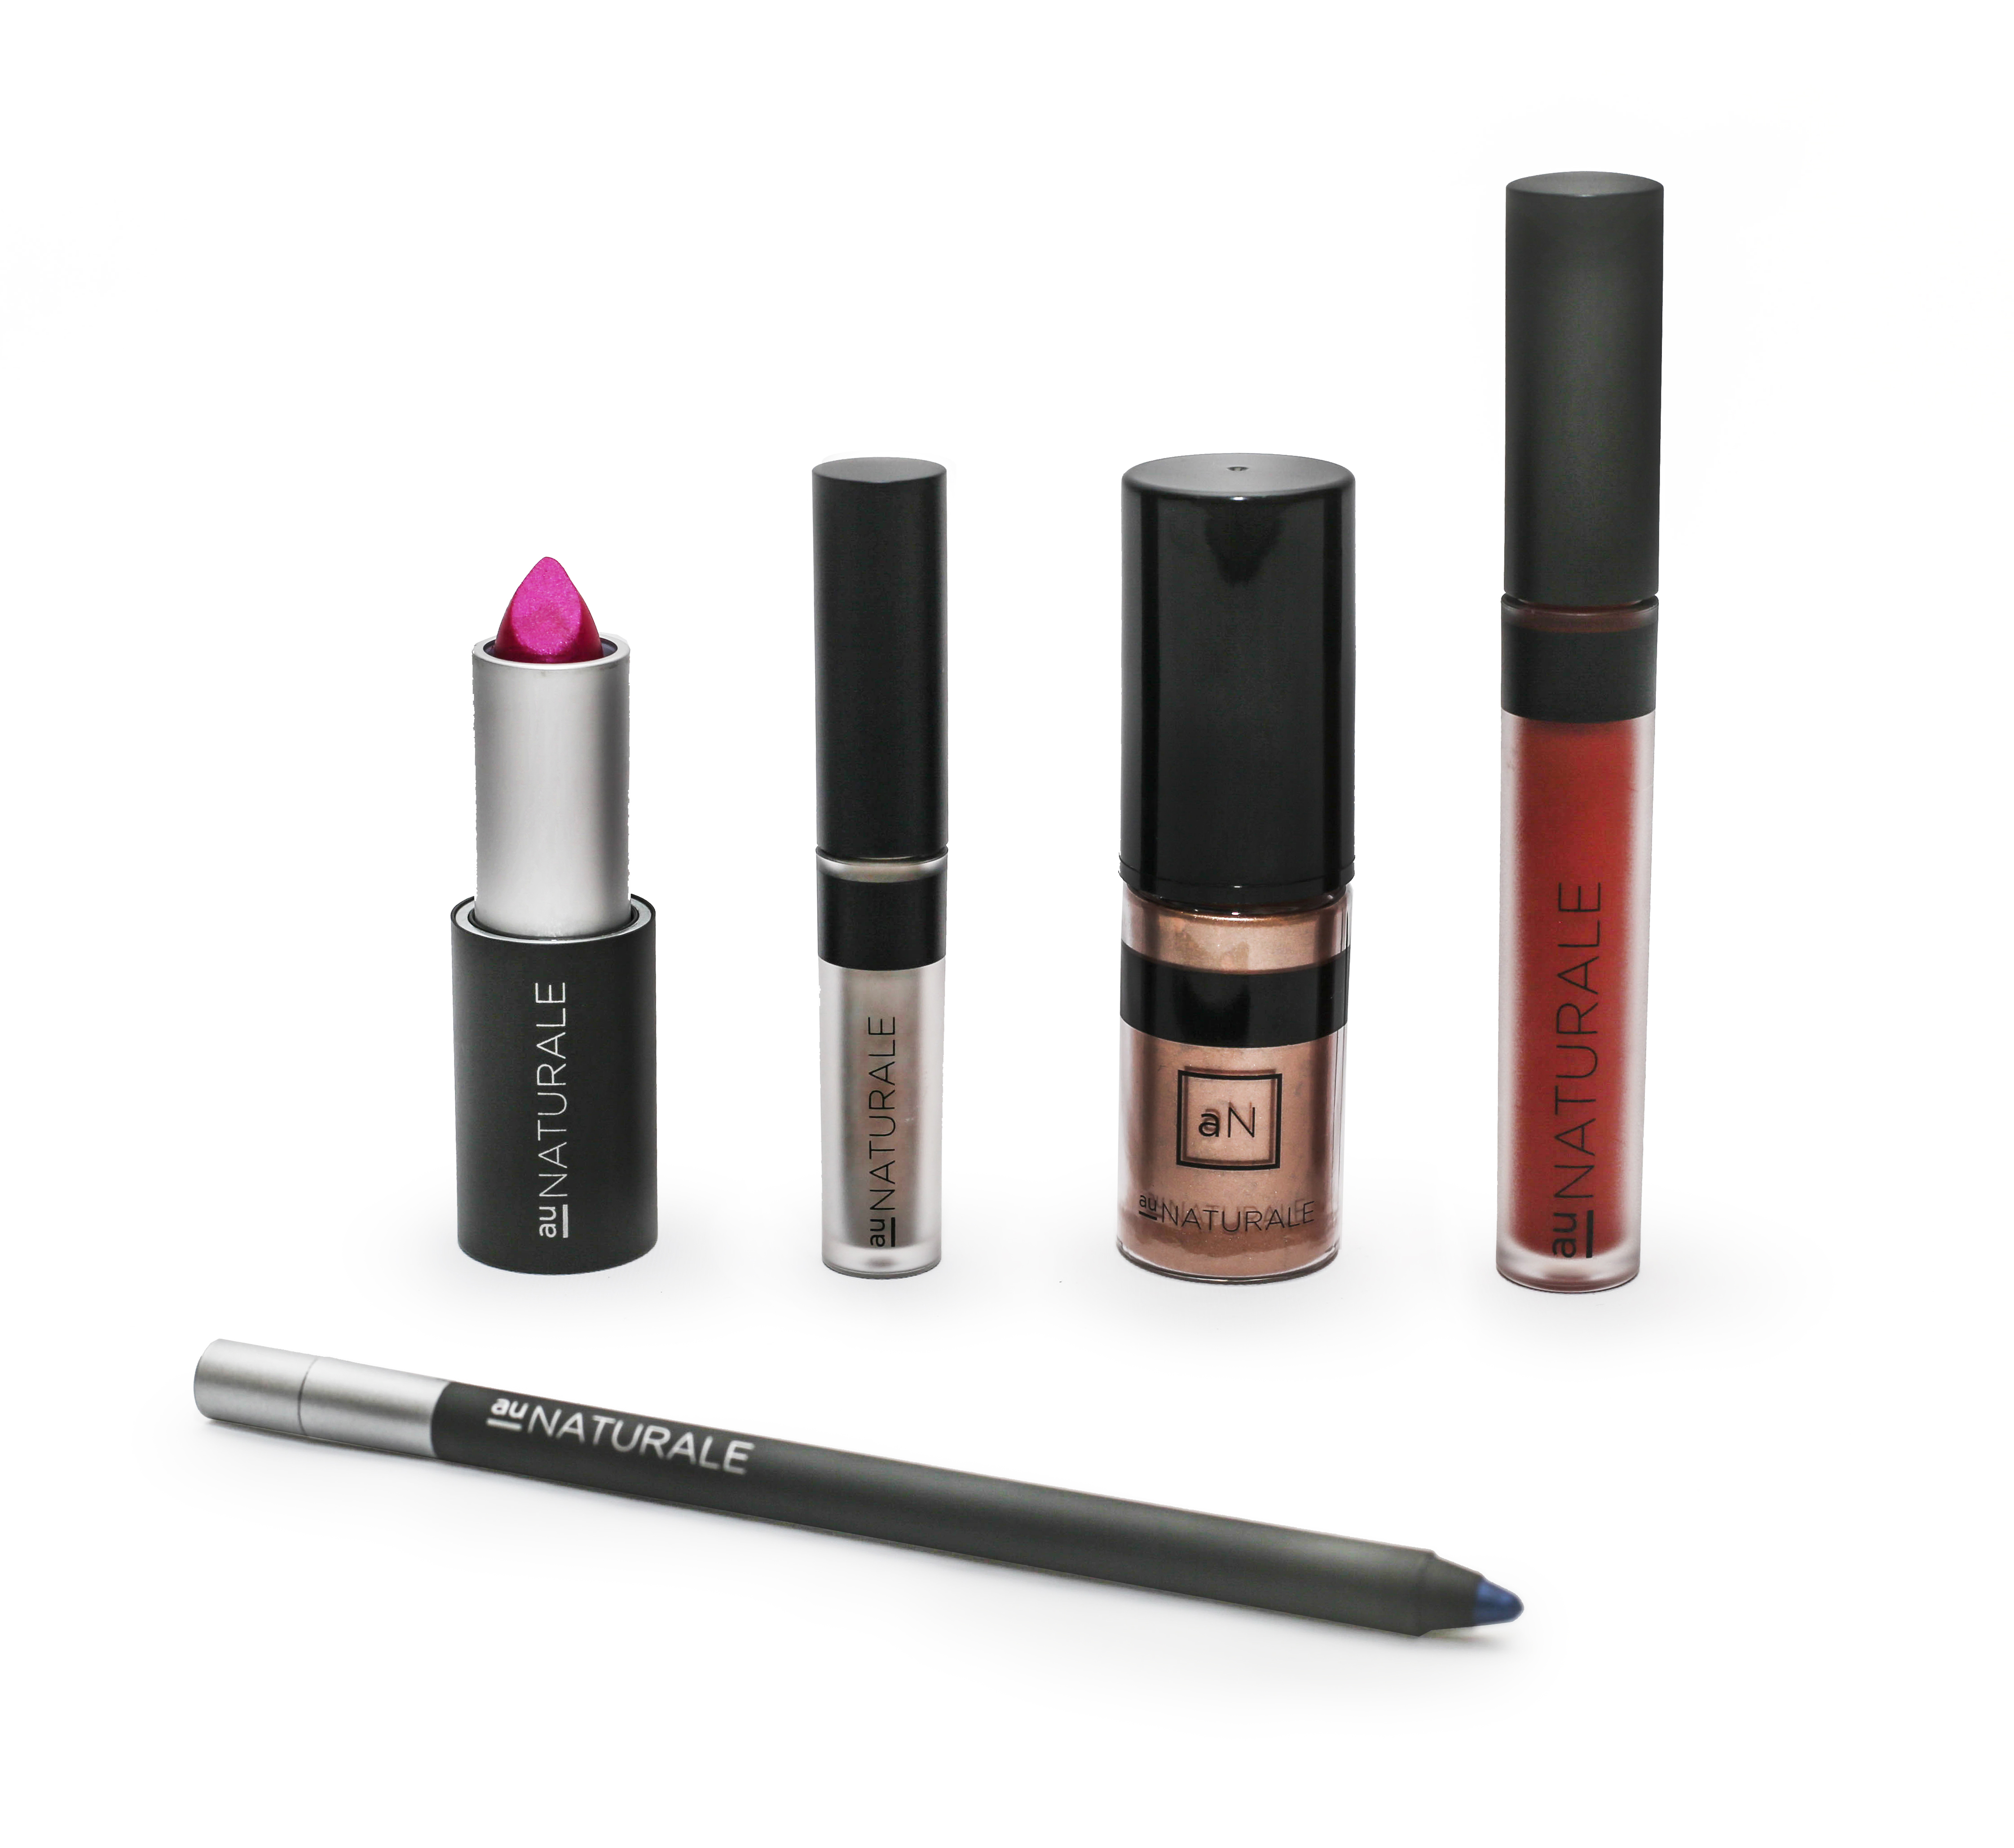 Au Naturale Products: Eyeliner, Foundation, Concealer, multi-stick blush/highlighter